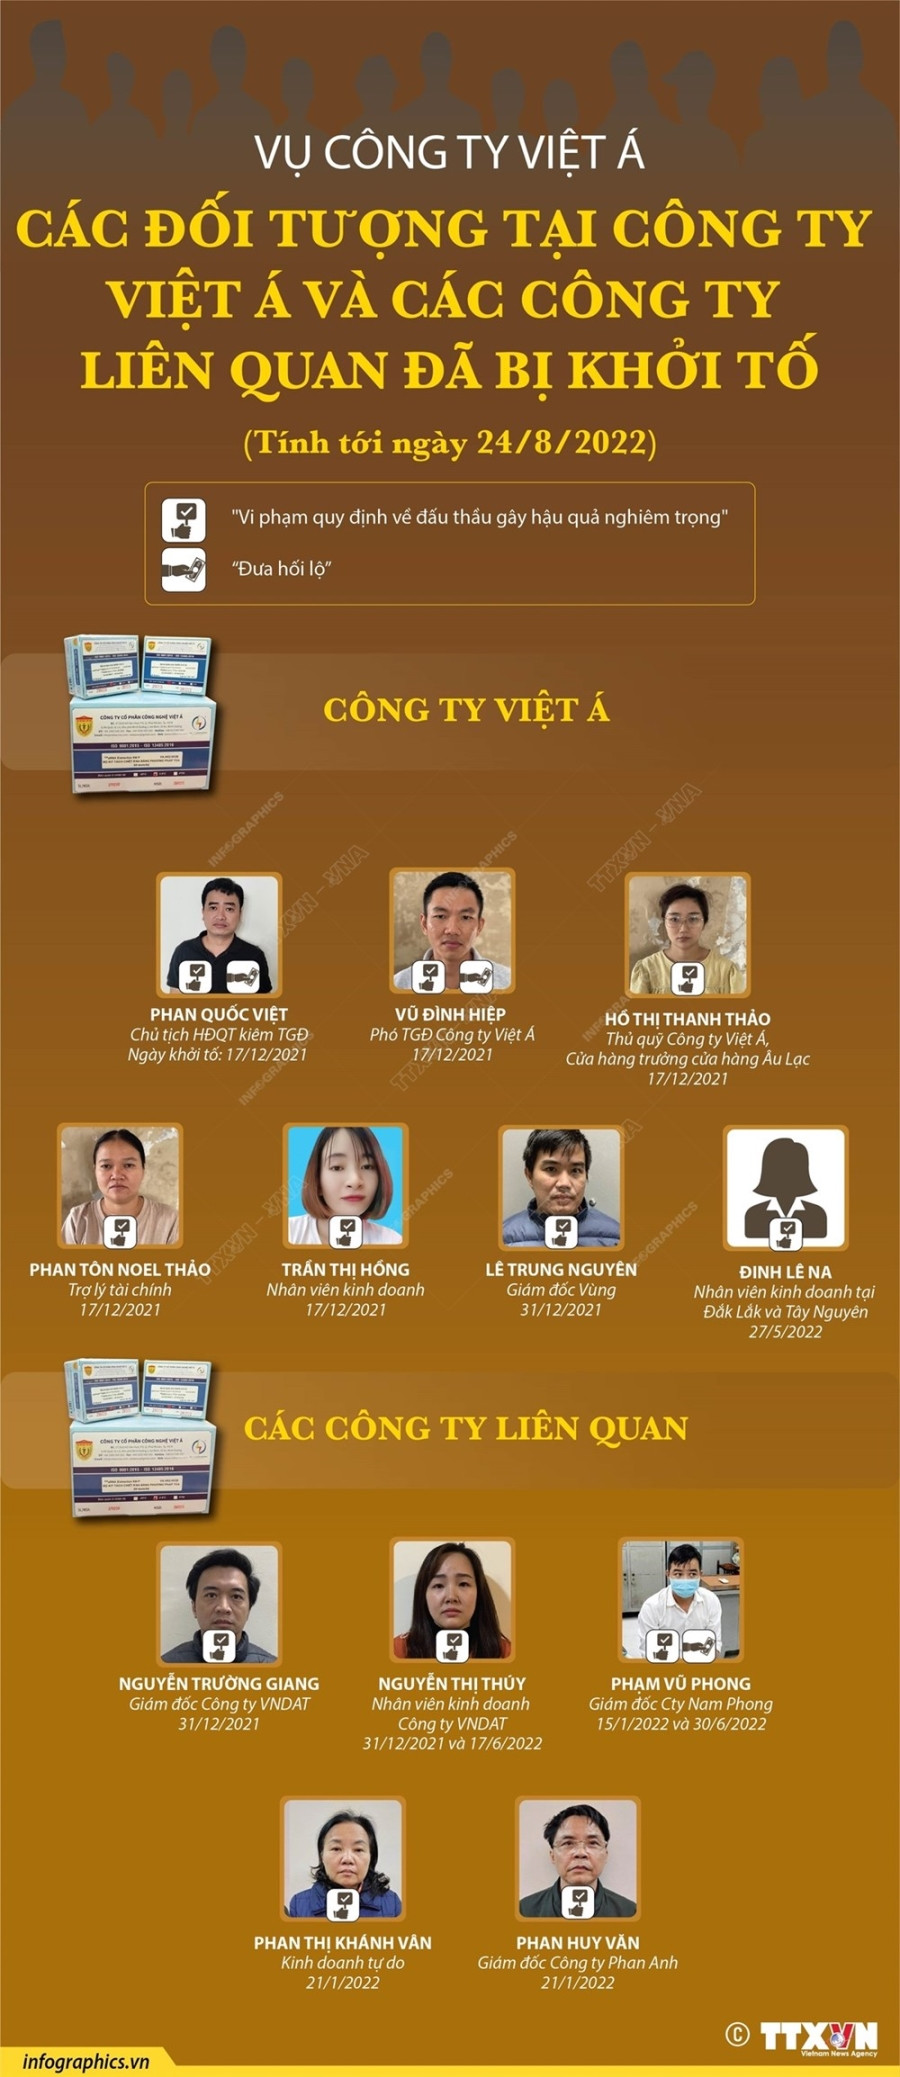 [Infographics] Toan canh vu an lien quan den cong ty Viet A hinh anh 1